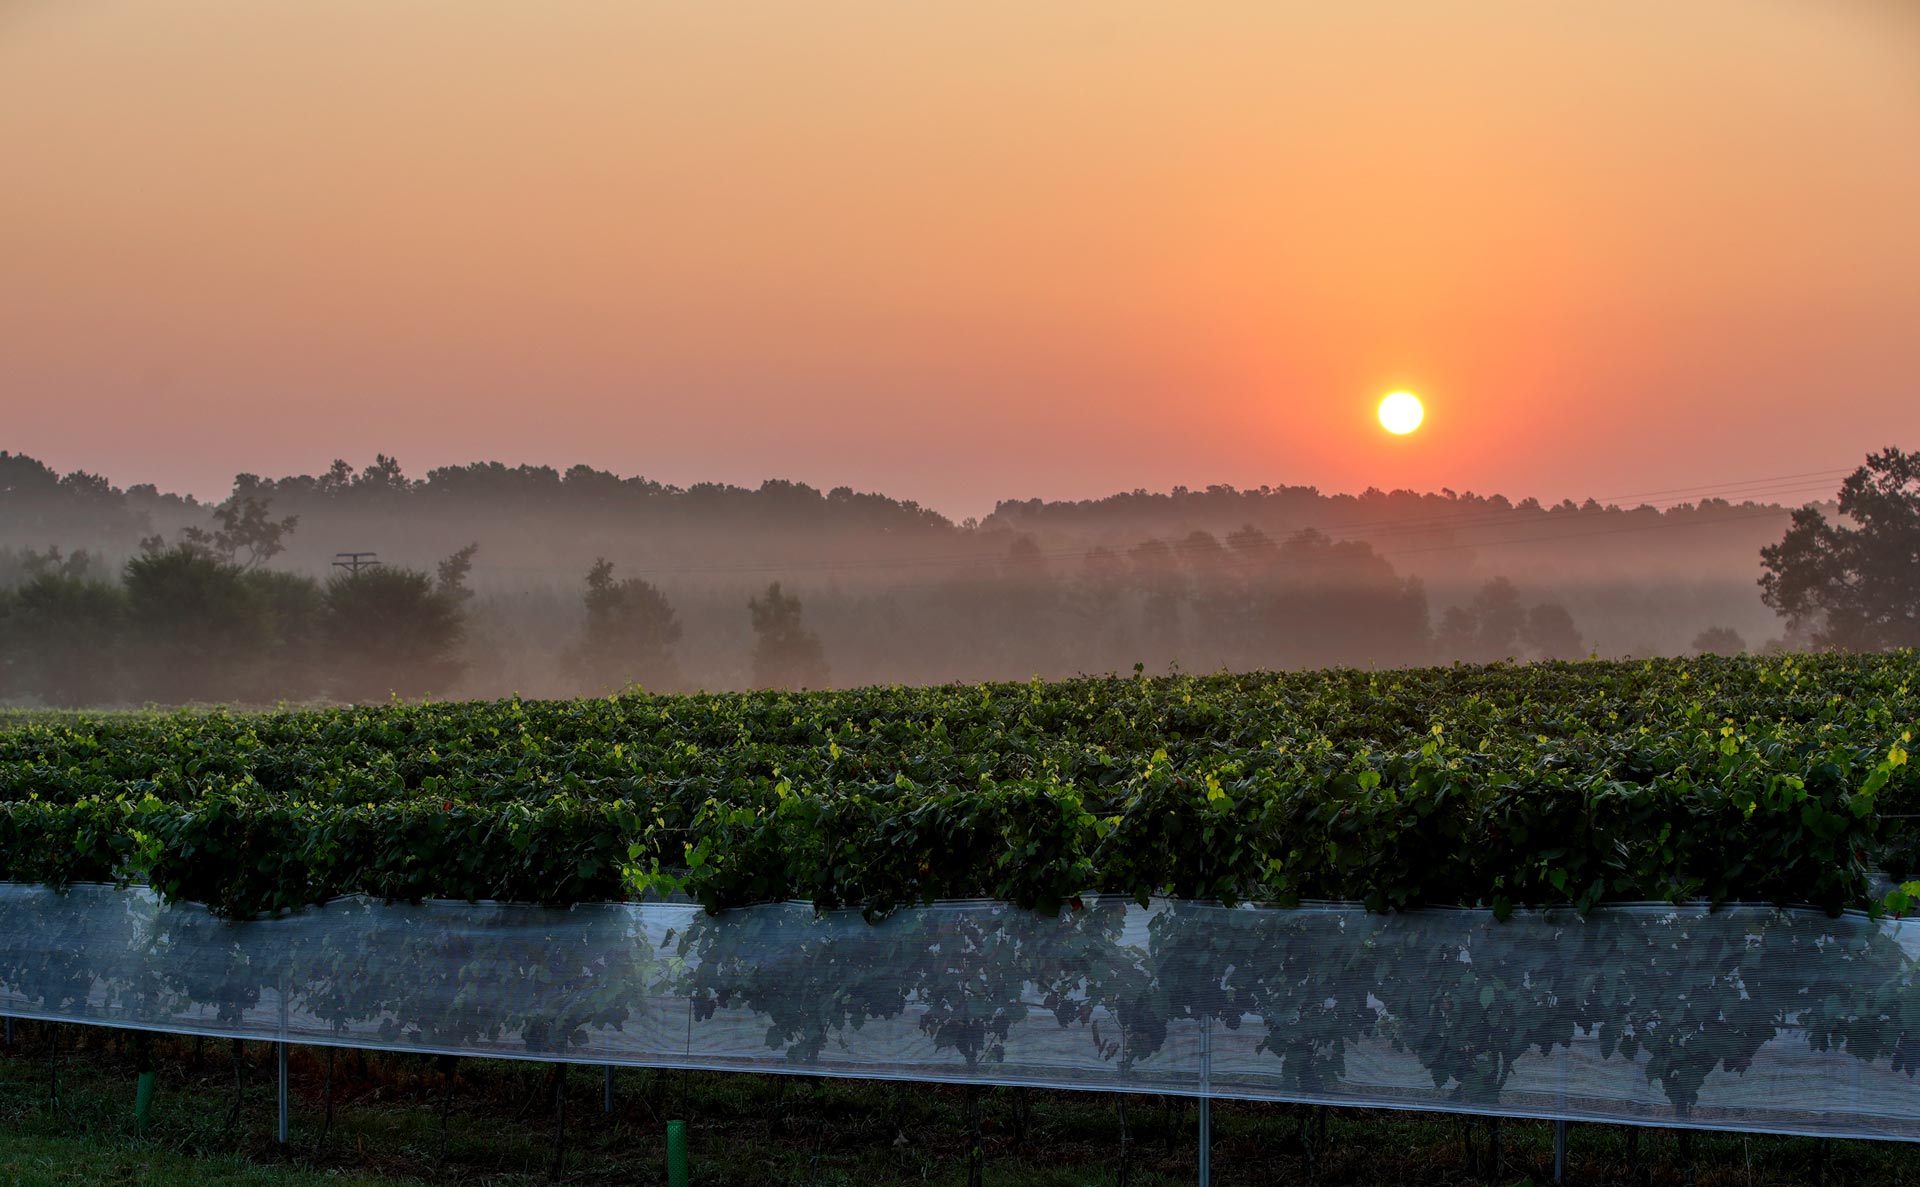 Sunrise over Rosemont winery Wednesday morning August 25, 2021.